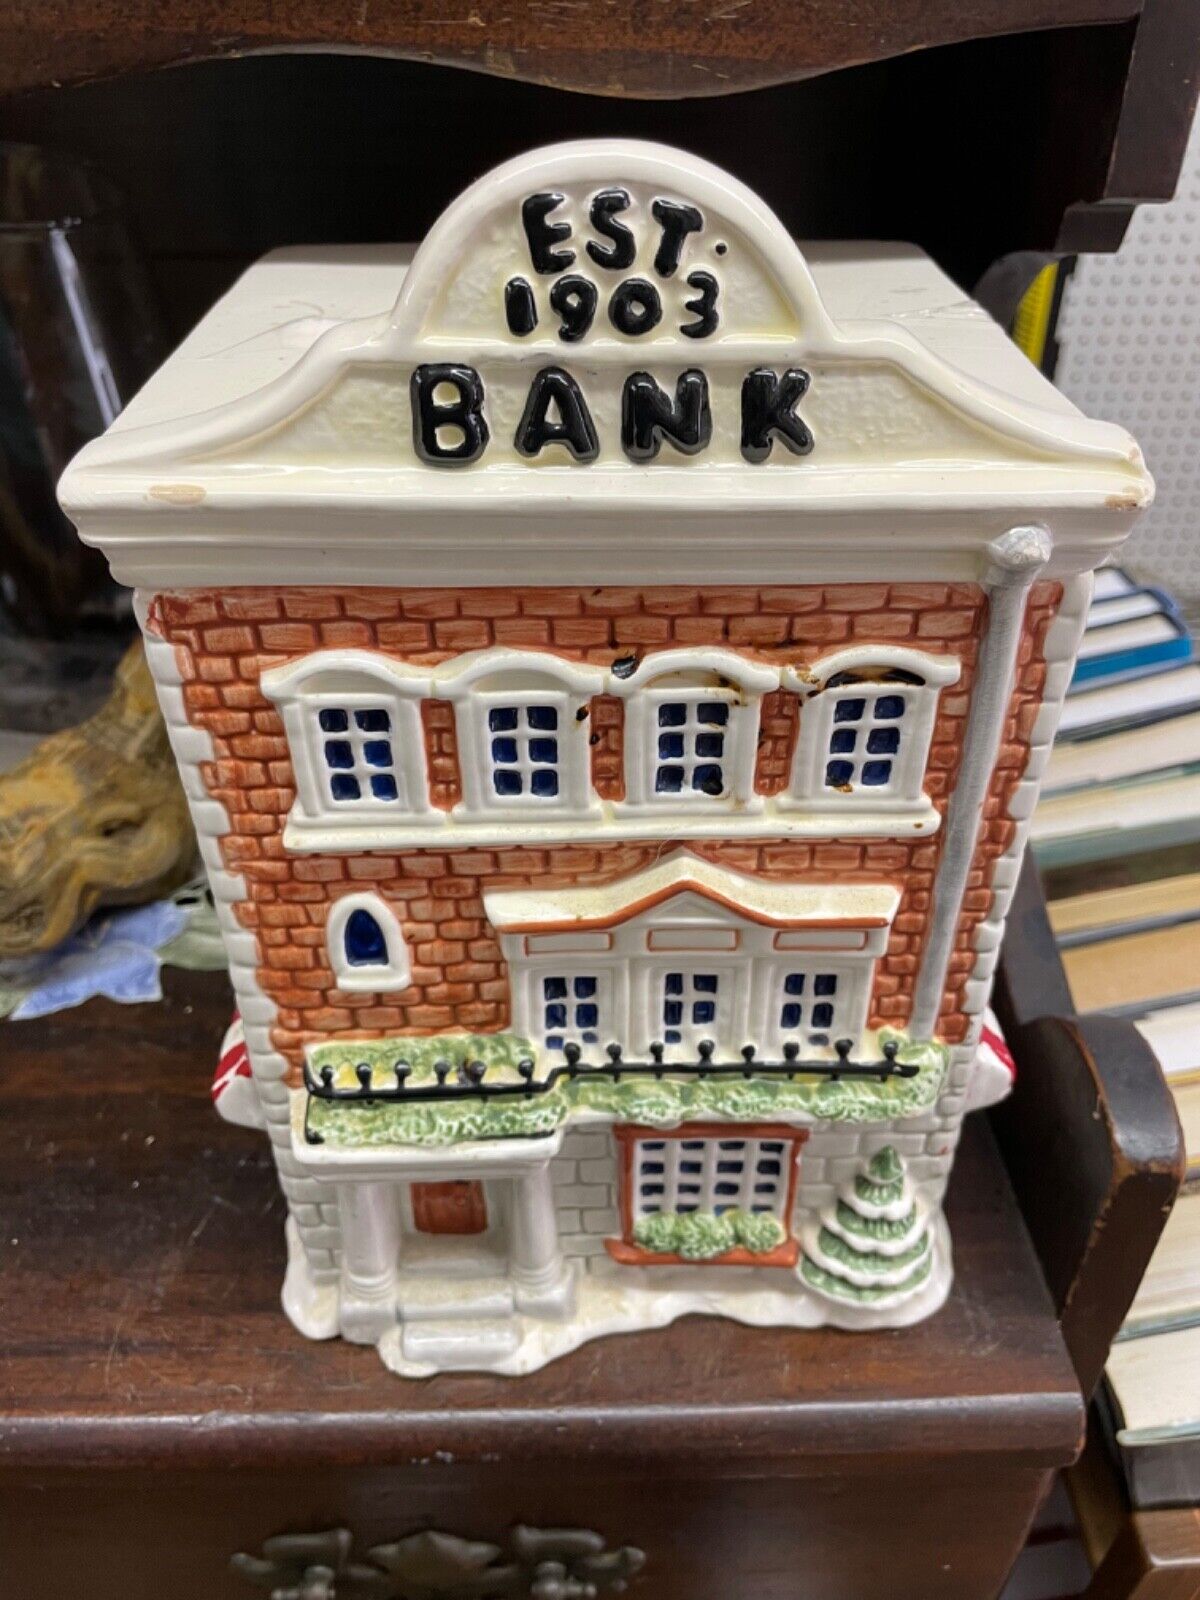 VTG Est. 1903 Bank Cookie Jar